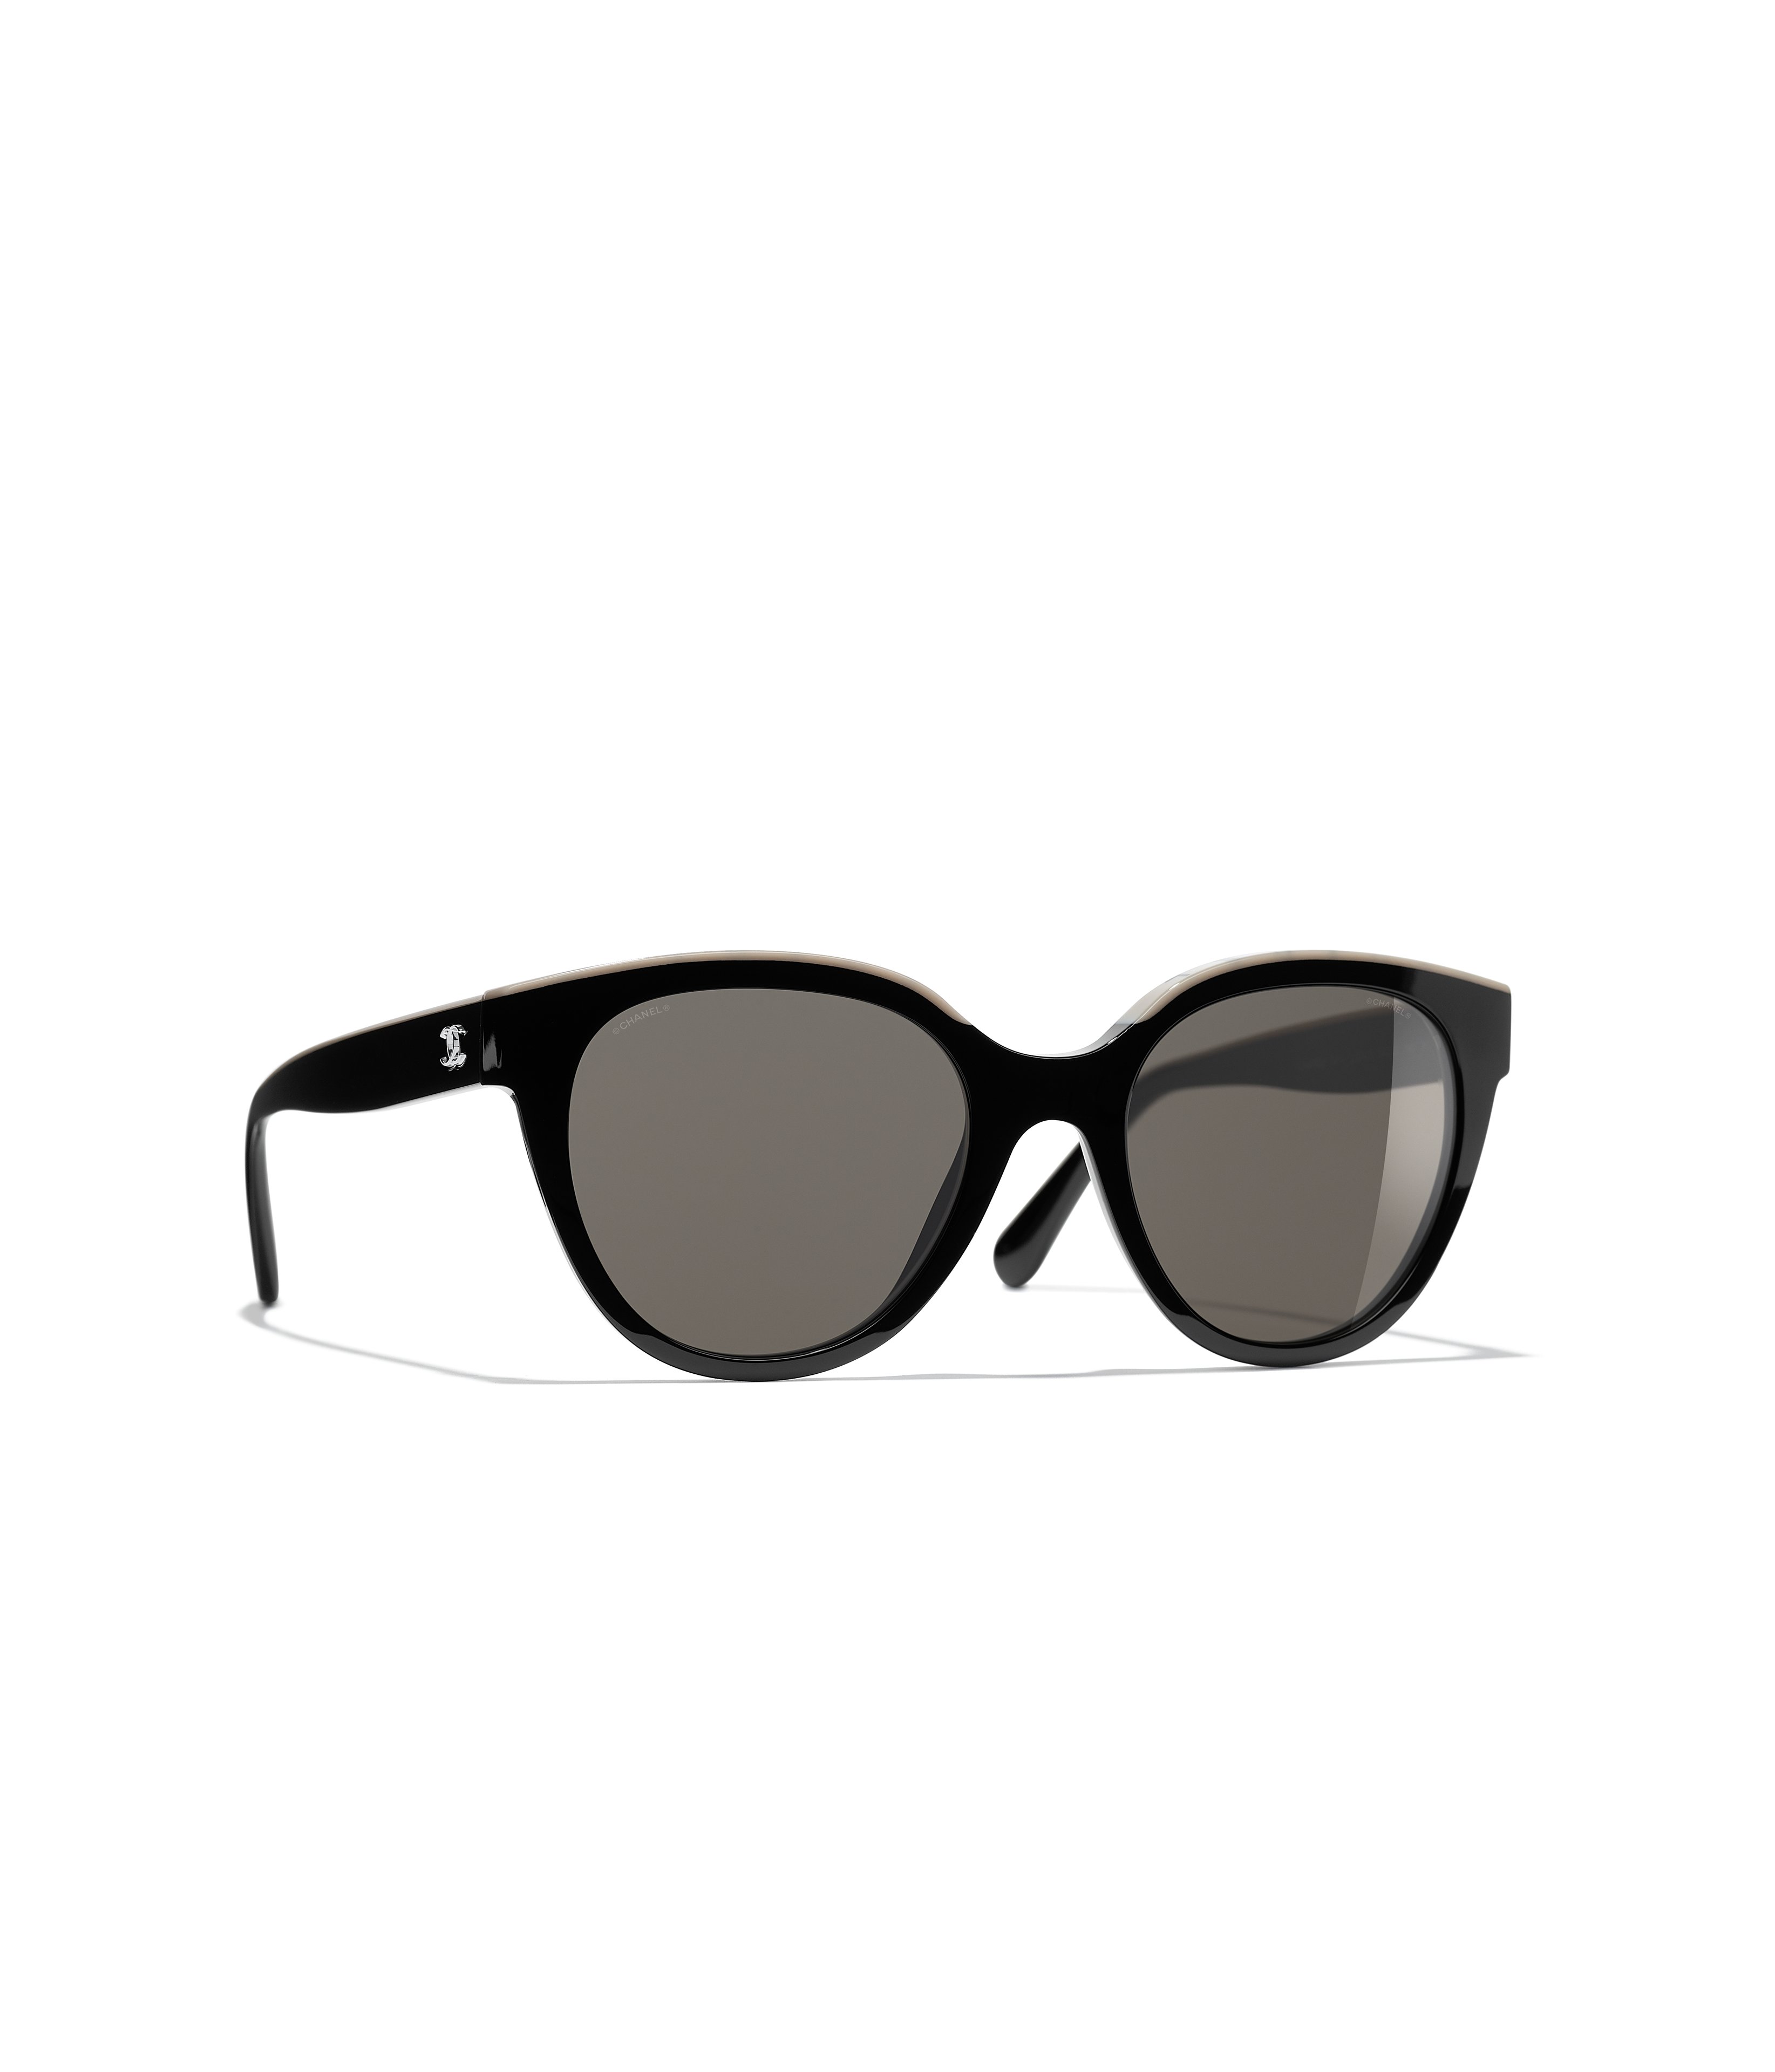 Chanel Sunglasses CH5414-C501S4, Sunglasses